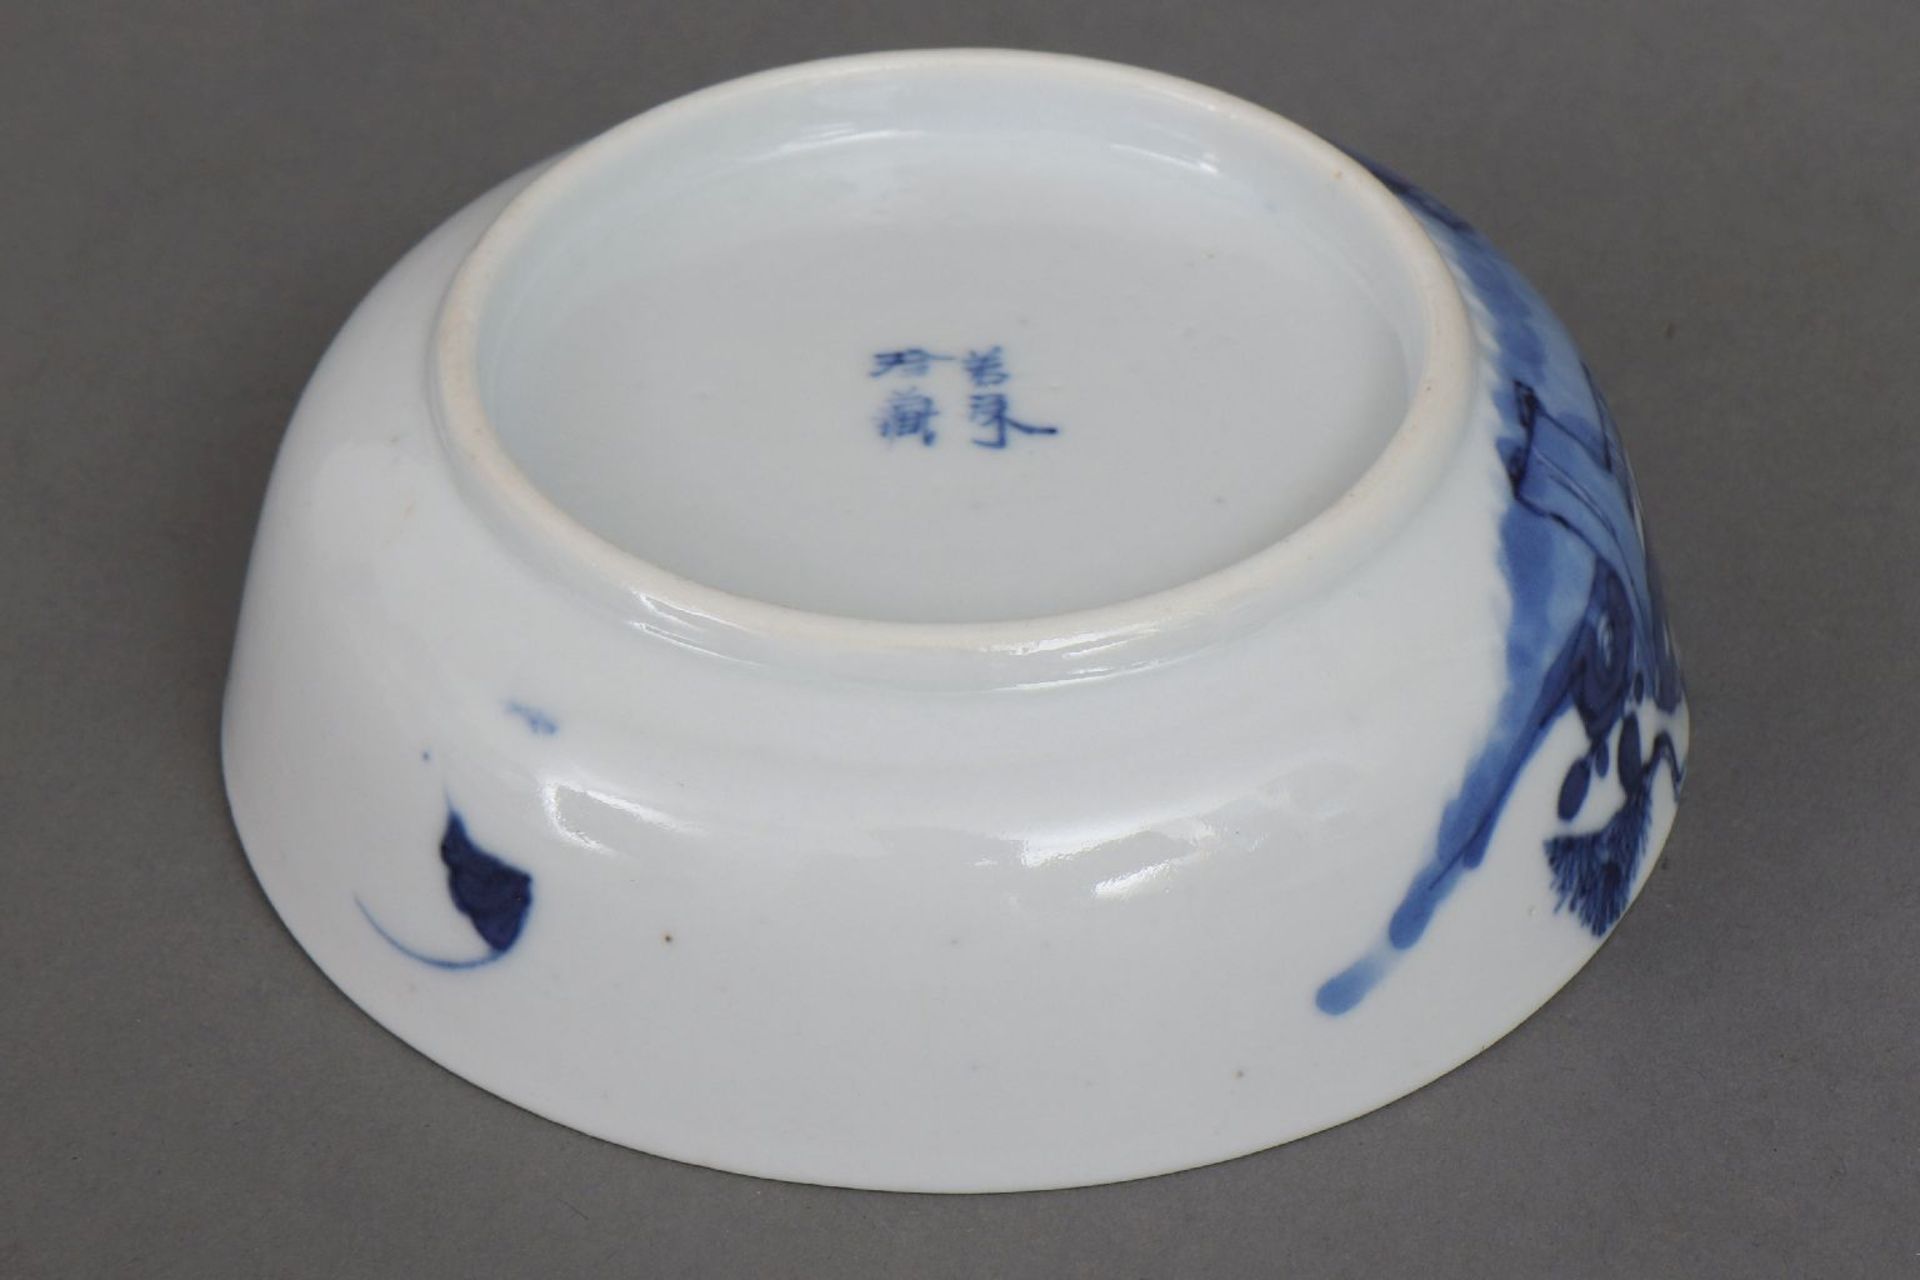 Chinesisches Porzellan-Schälchen mit Blaumalerei - Image 5 of 5